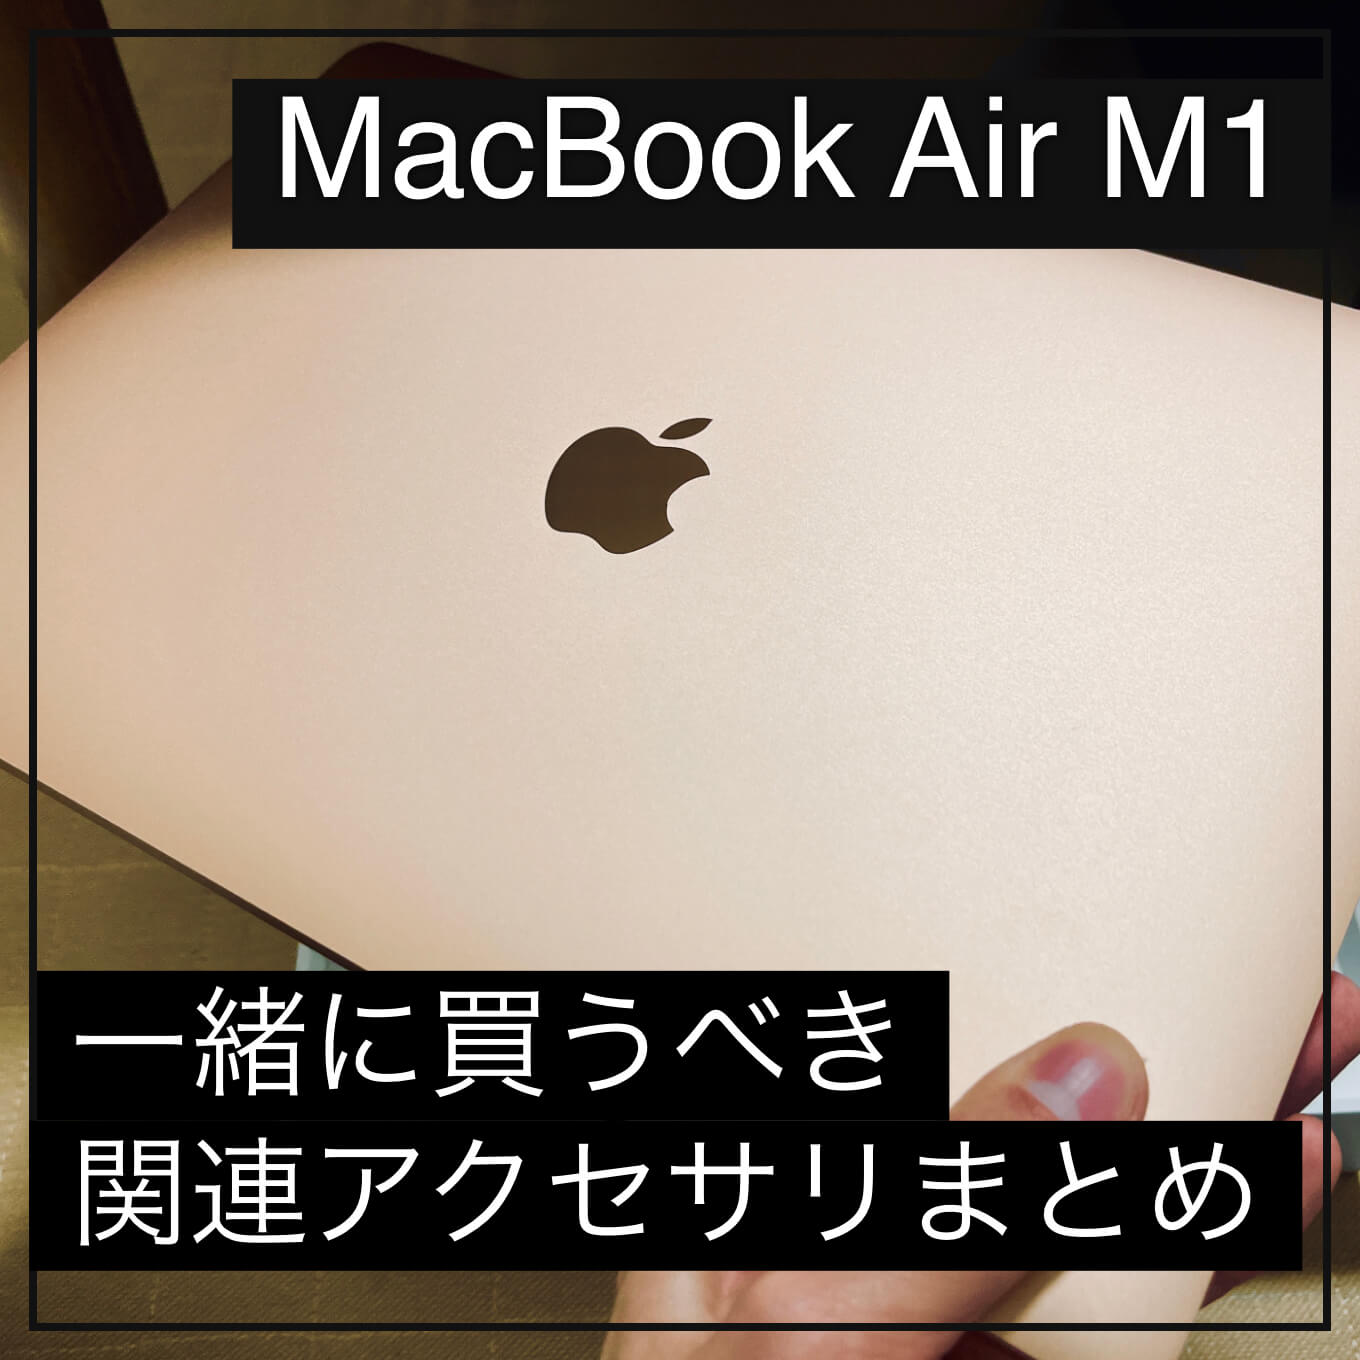 MacBook Air M1と一緒に買いたい周辺アクセサリー・ガジェット - あなたのスイッチを押すブログ